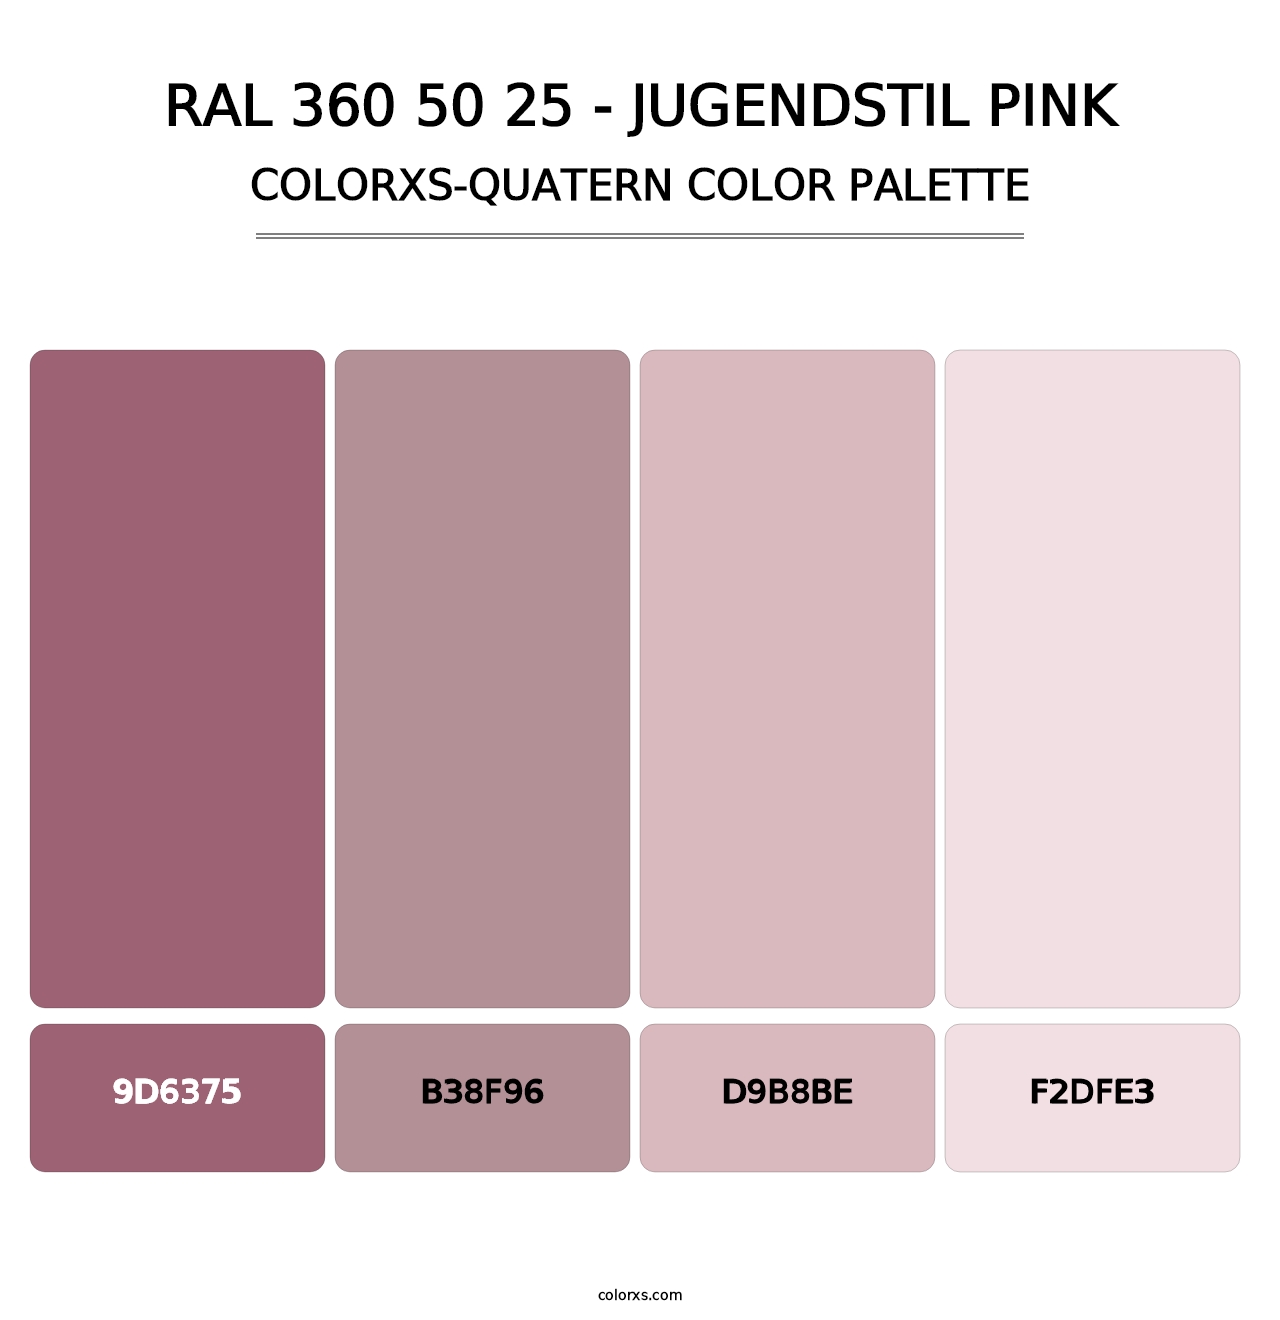 RAL 360 50 25 - Jugendstil Pink - Colorxs Quatern Palette